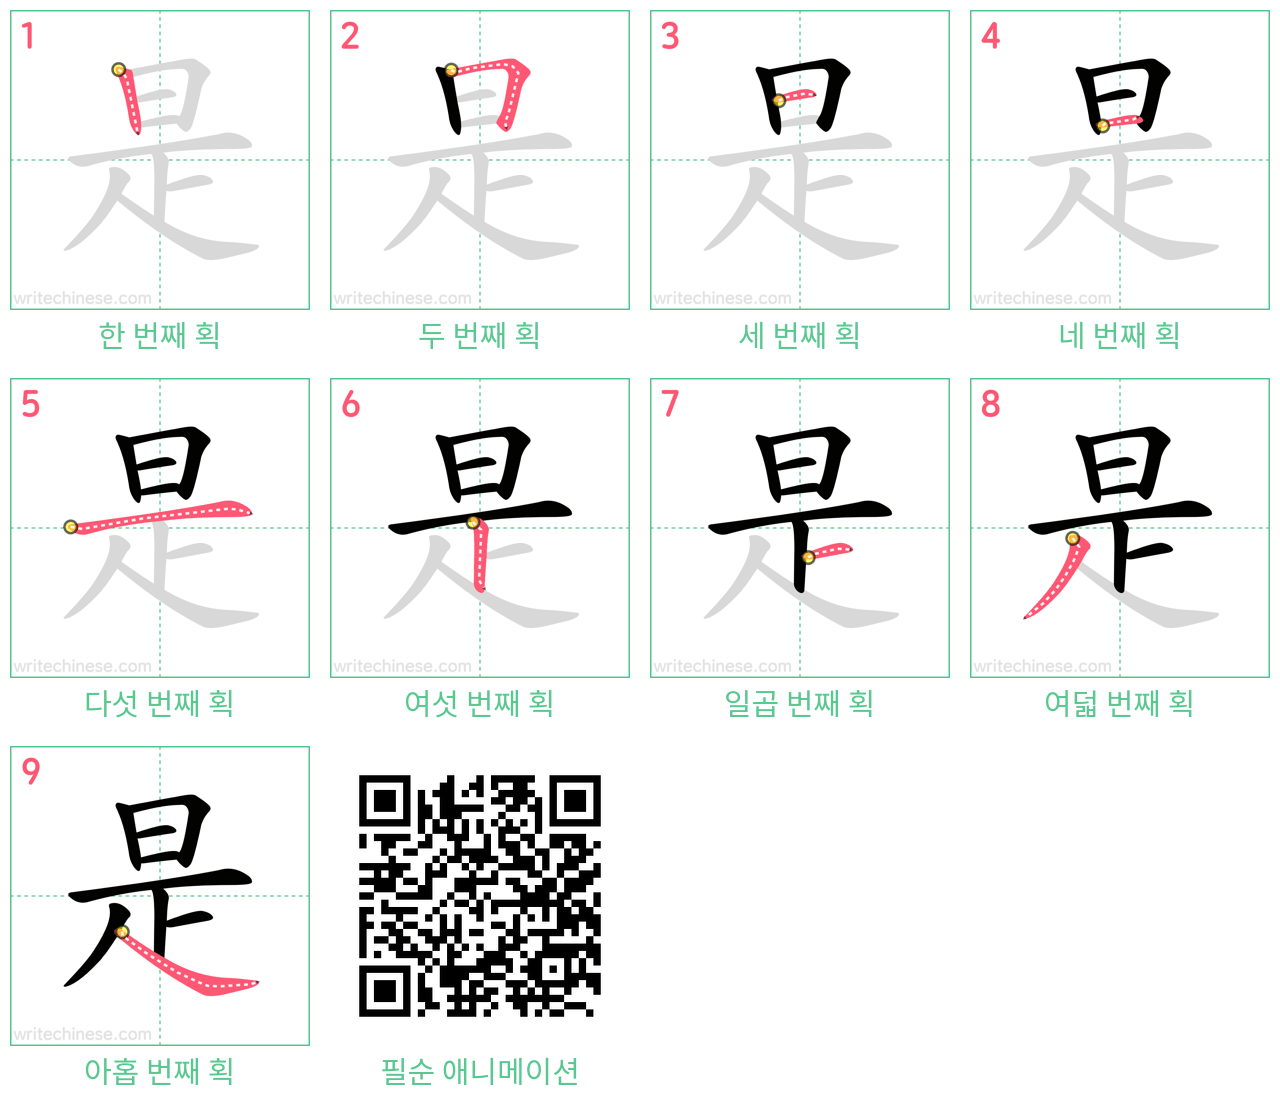 是 step-by-step stroke order diagrams